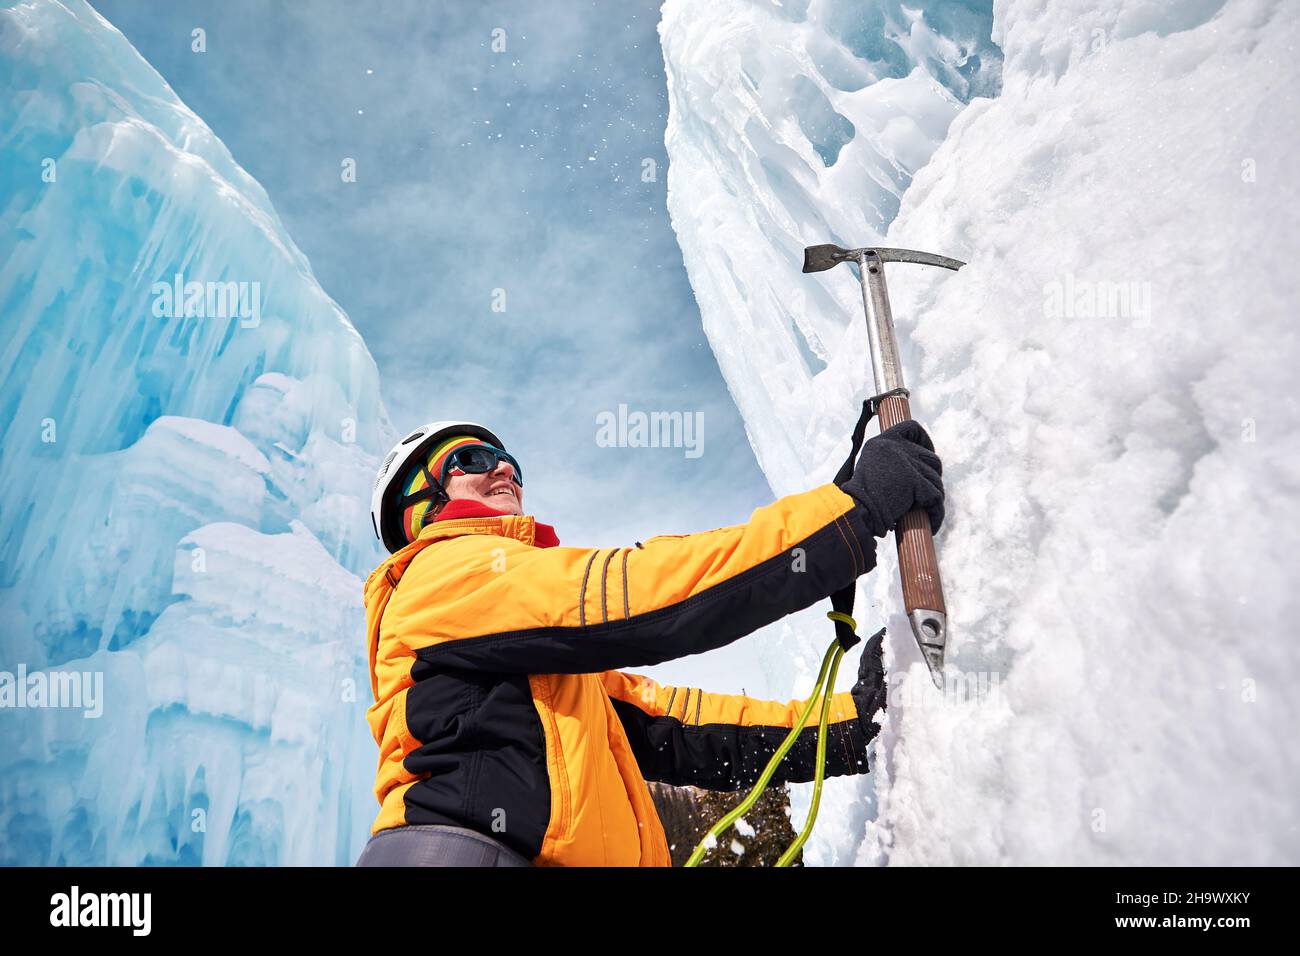 La mujer está escalando una cascada congelada en el casco con hacha de hielo en la chaqueta naranja en las montañas. Concepto de alpinismo y alpinismo deportivo. Foto de stock